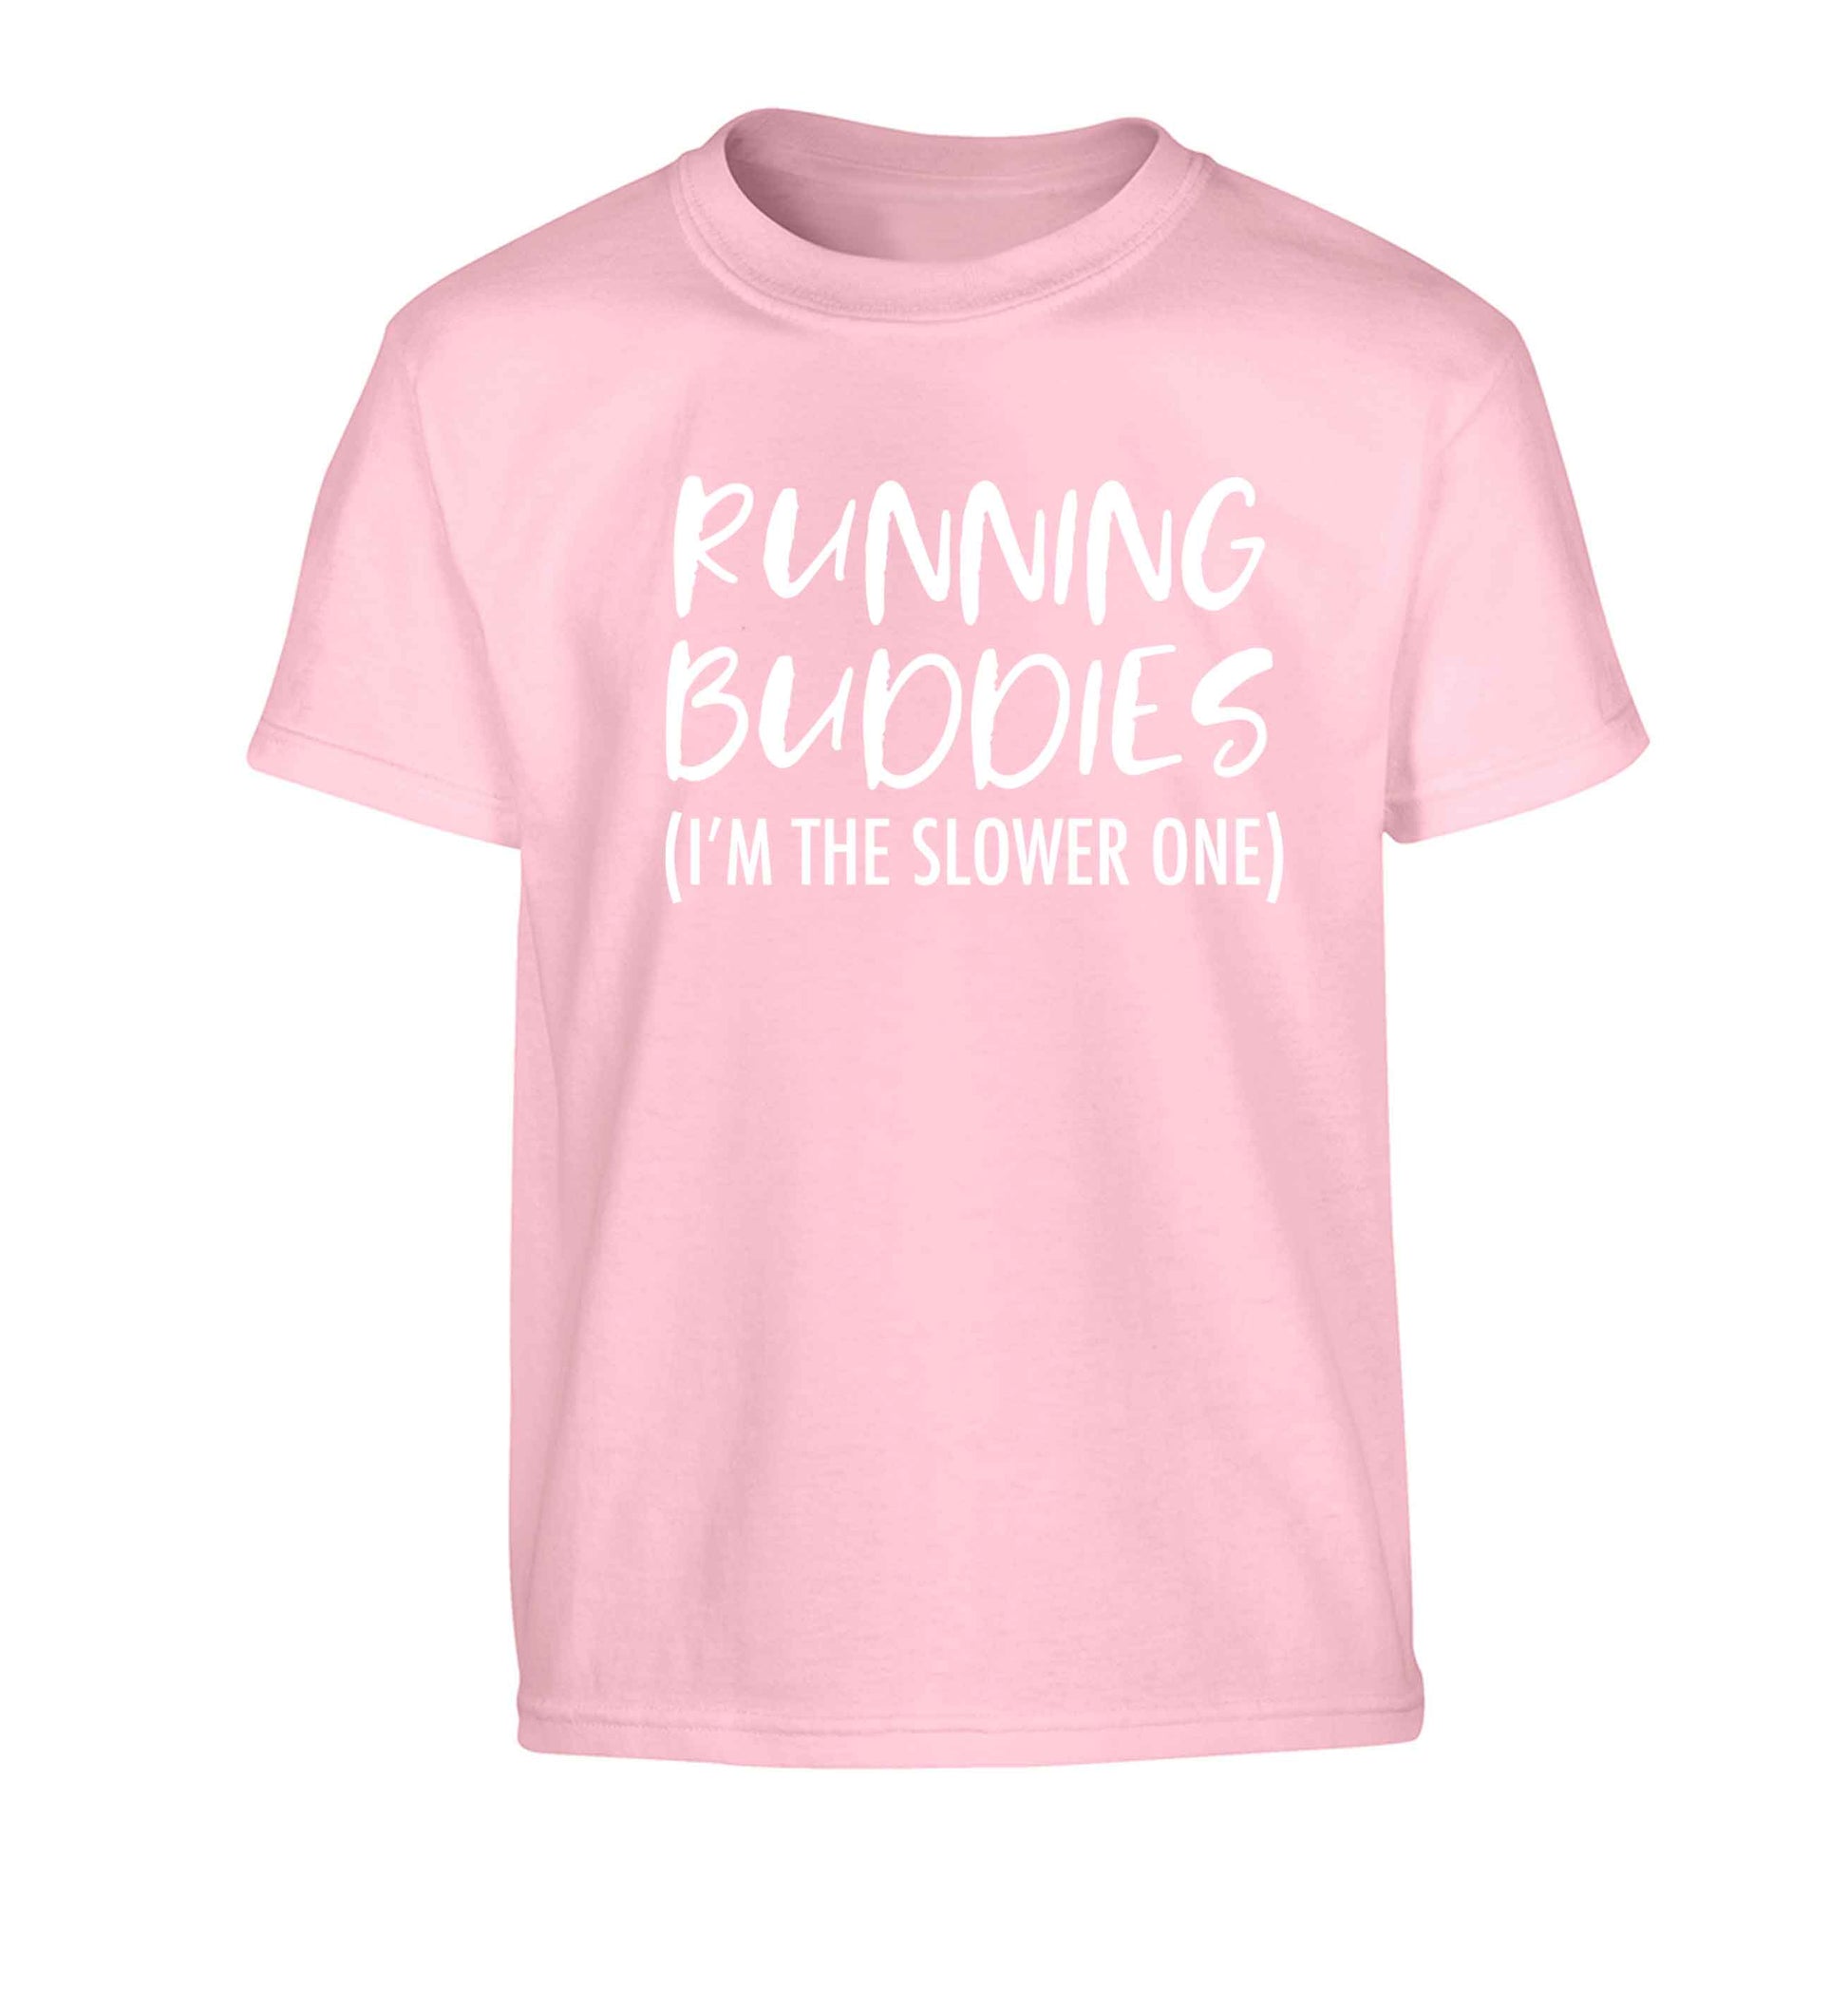 Running buddies (I'm the slower one) Children's light pink Tshirt 12-13 Years